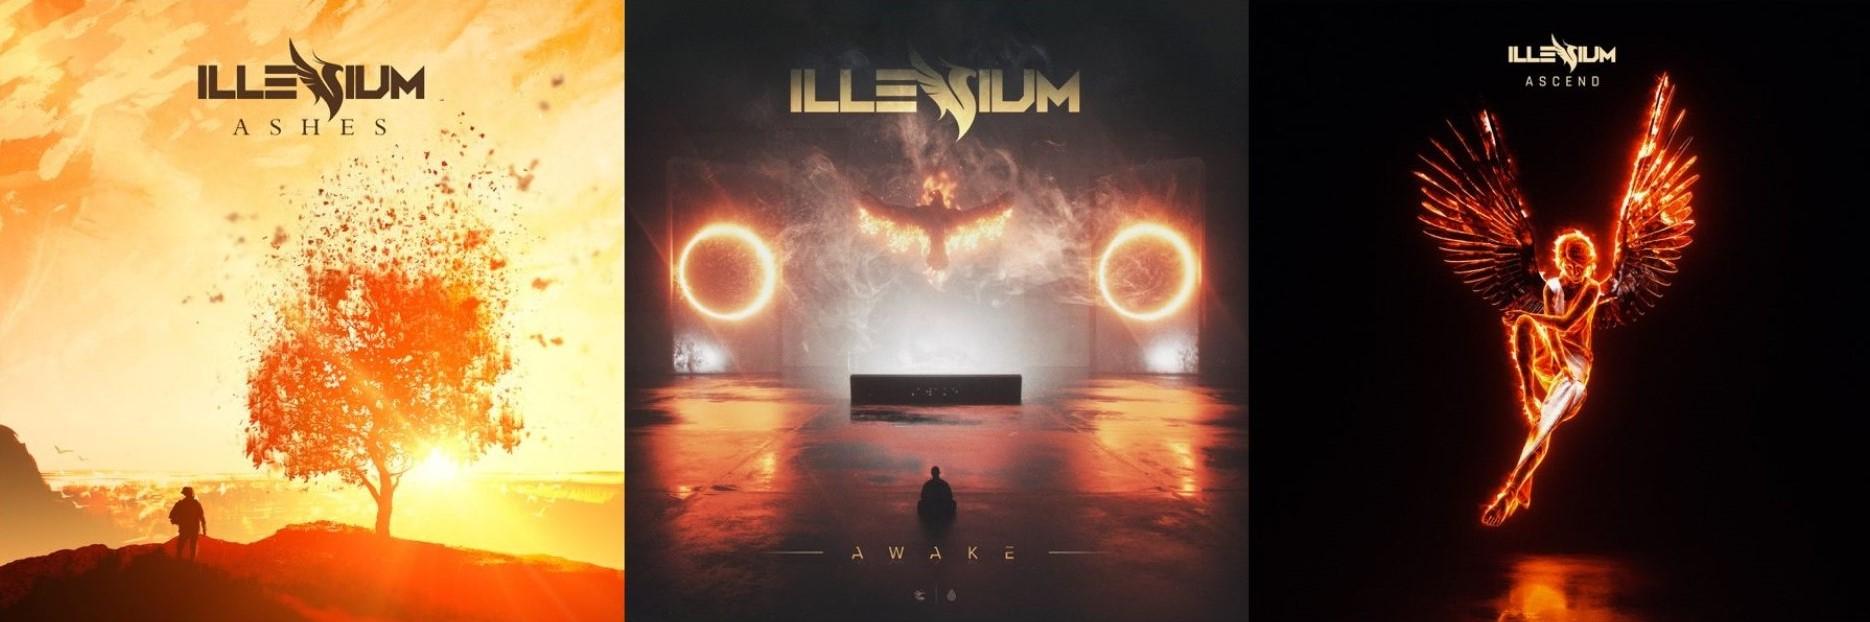 ILLENIUM anuncia nuevo ALBUM Y WORLD TOUR